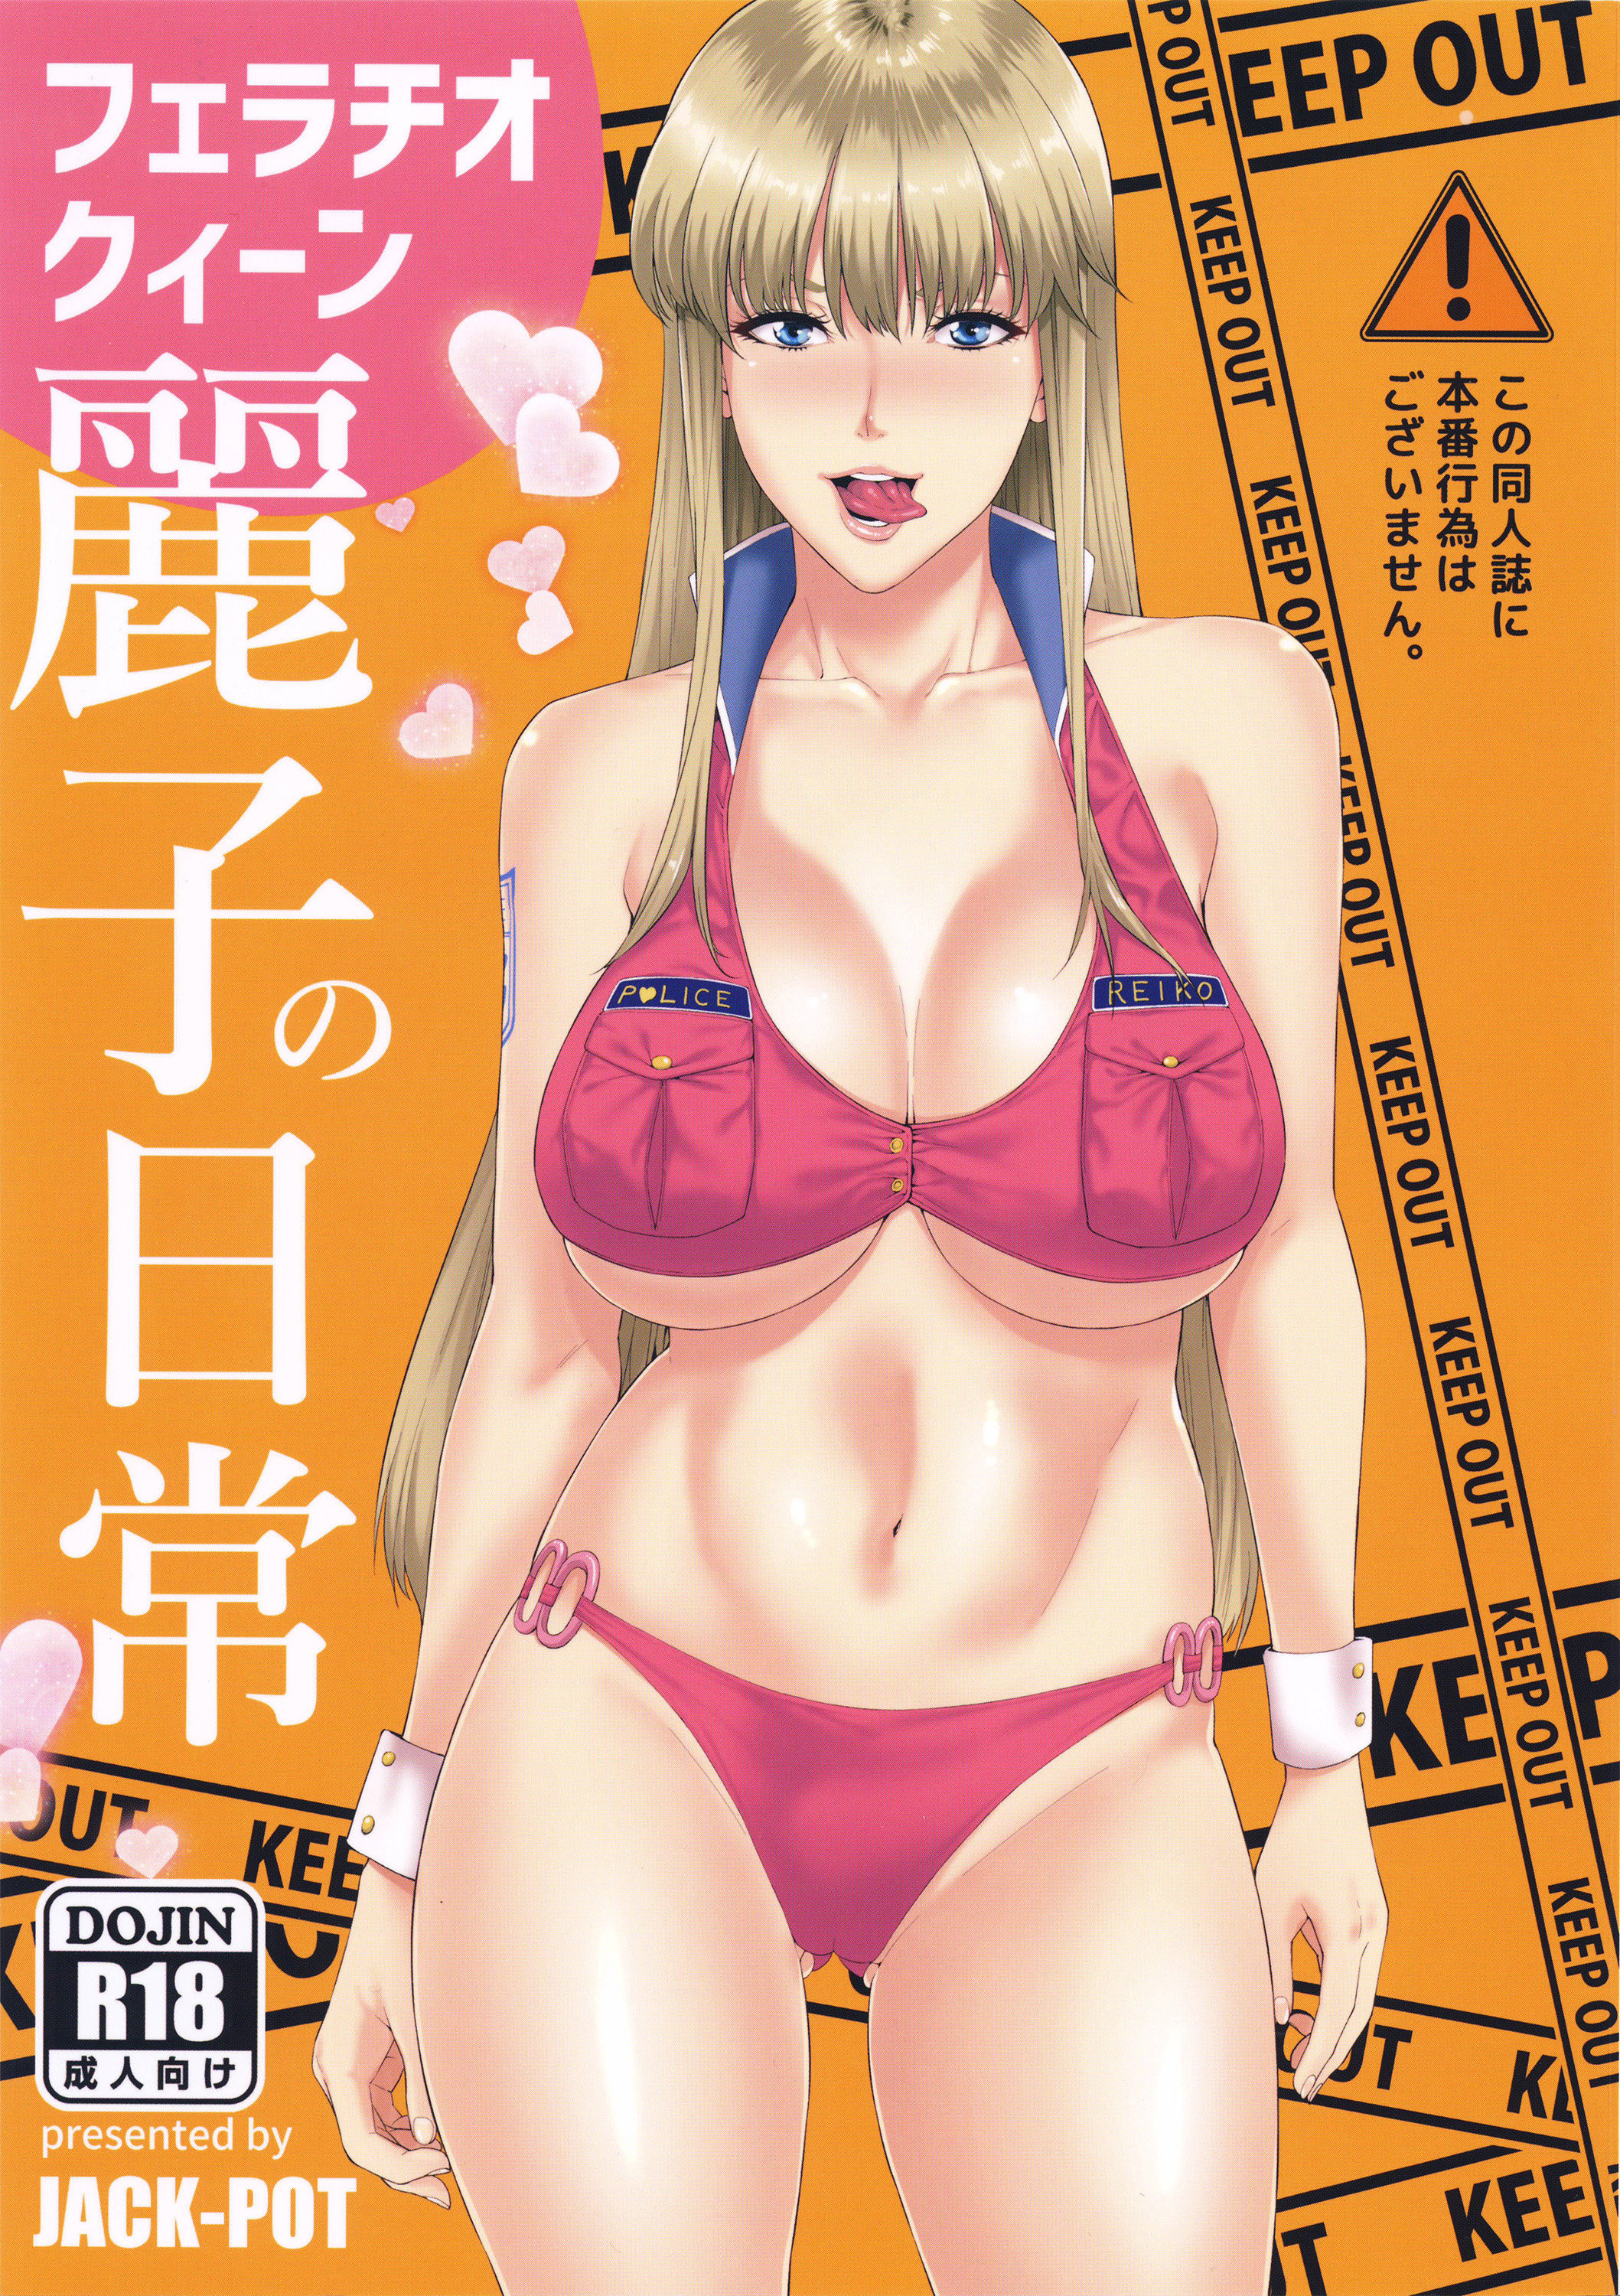 JACK-POT (Jyura) Fellatio Queen Reiko no Nichijou Hentai Comic